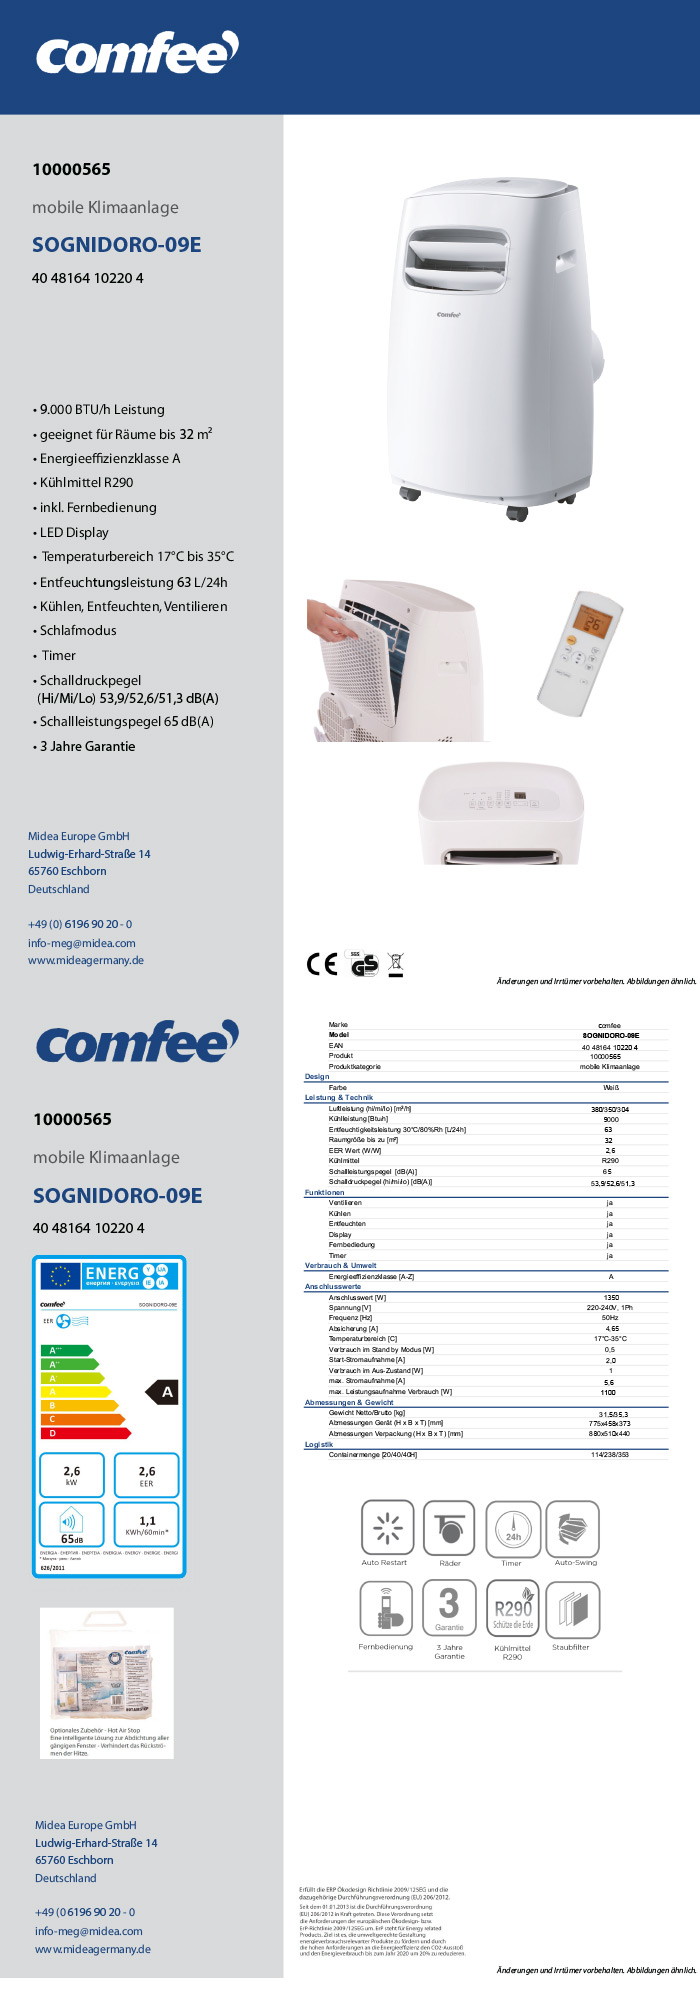 Comfee mobile Klimaanlage »SOGNIDORO-09E« | LIDL